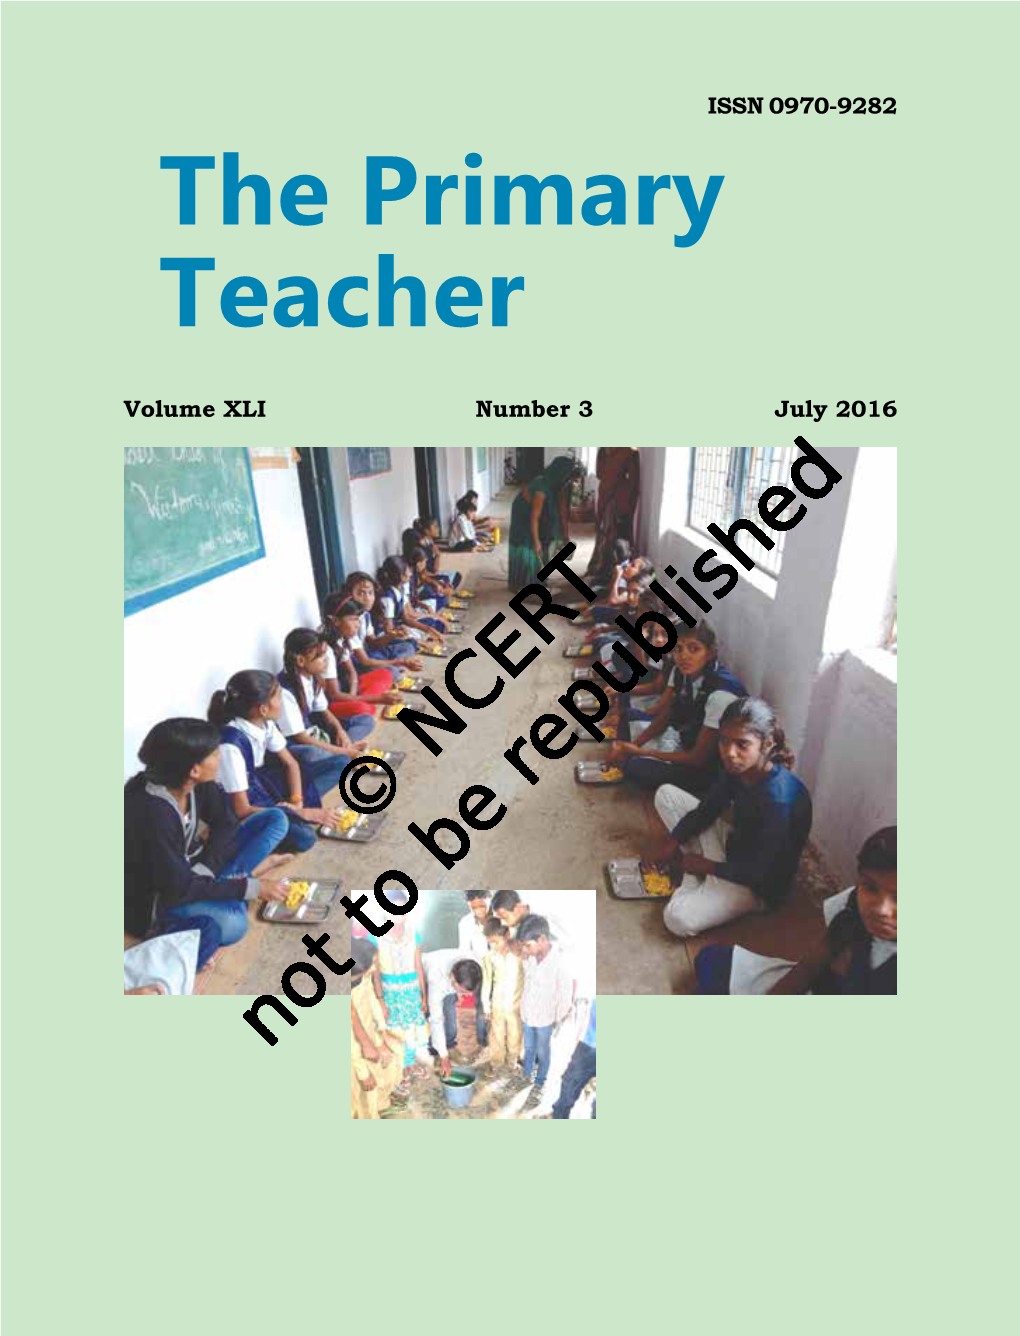 The Primary Teacher